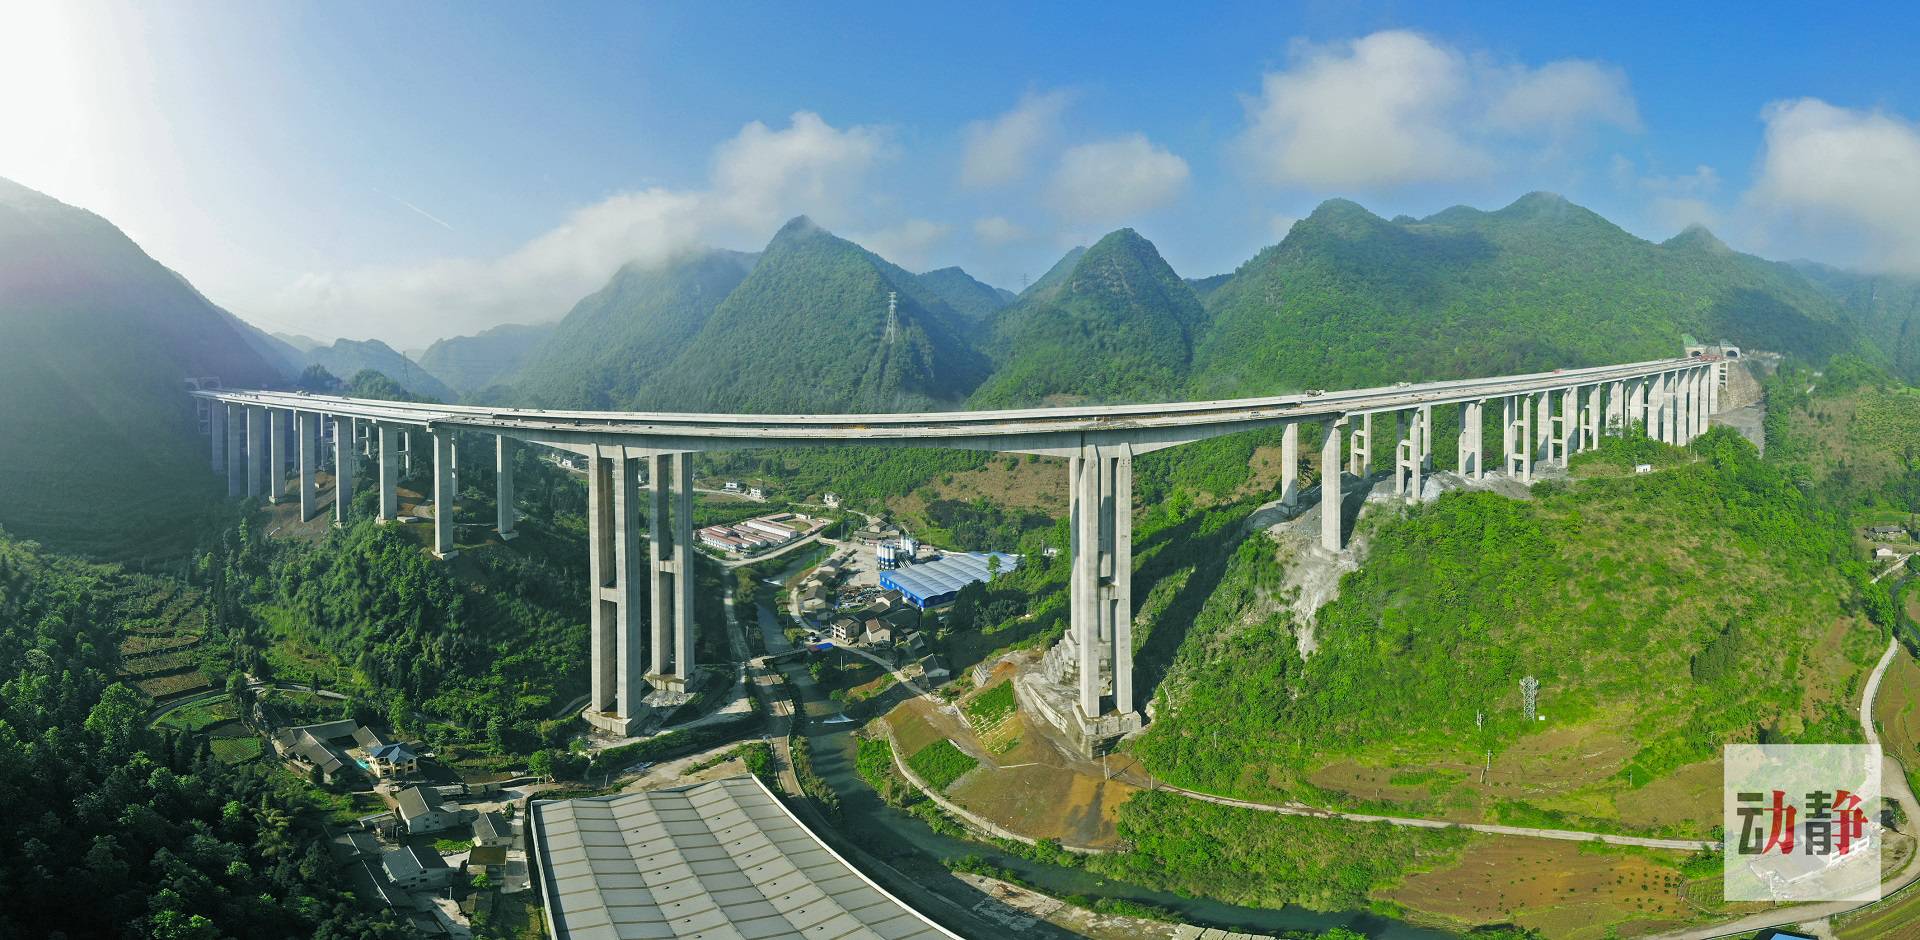 据了解,重遵扩容项目作为兰州至海口国家高速公路重庆至遵义的连接段